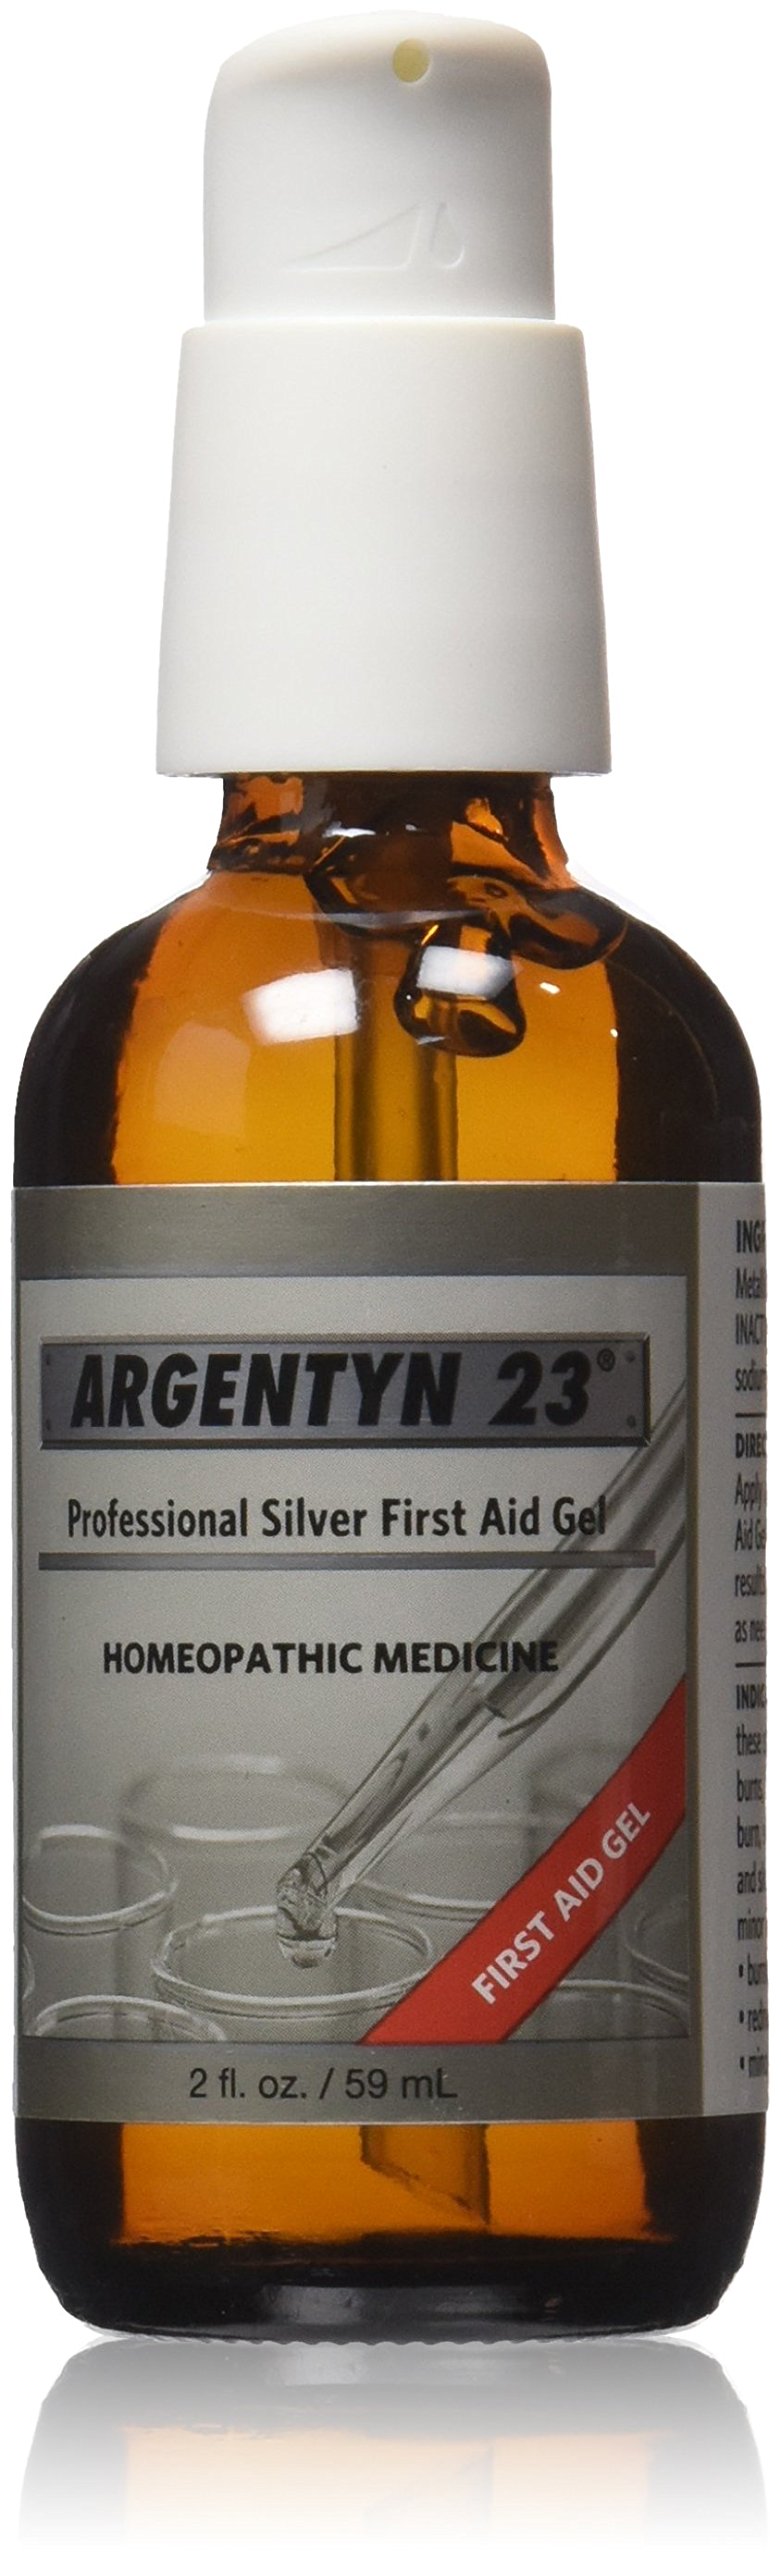 [Australia - AusPower] - Argentyn 23 Professional Silver First Aid Gel - 2 fl oz 